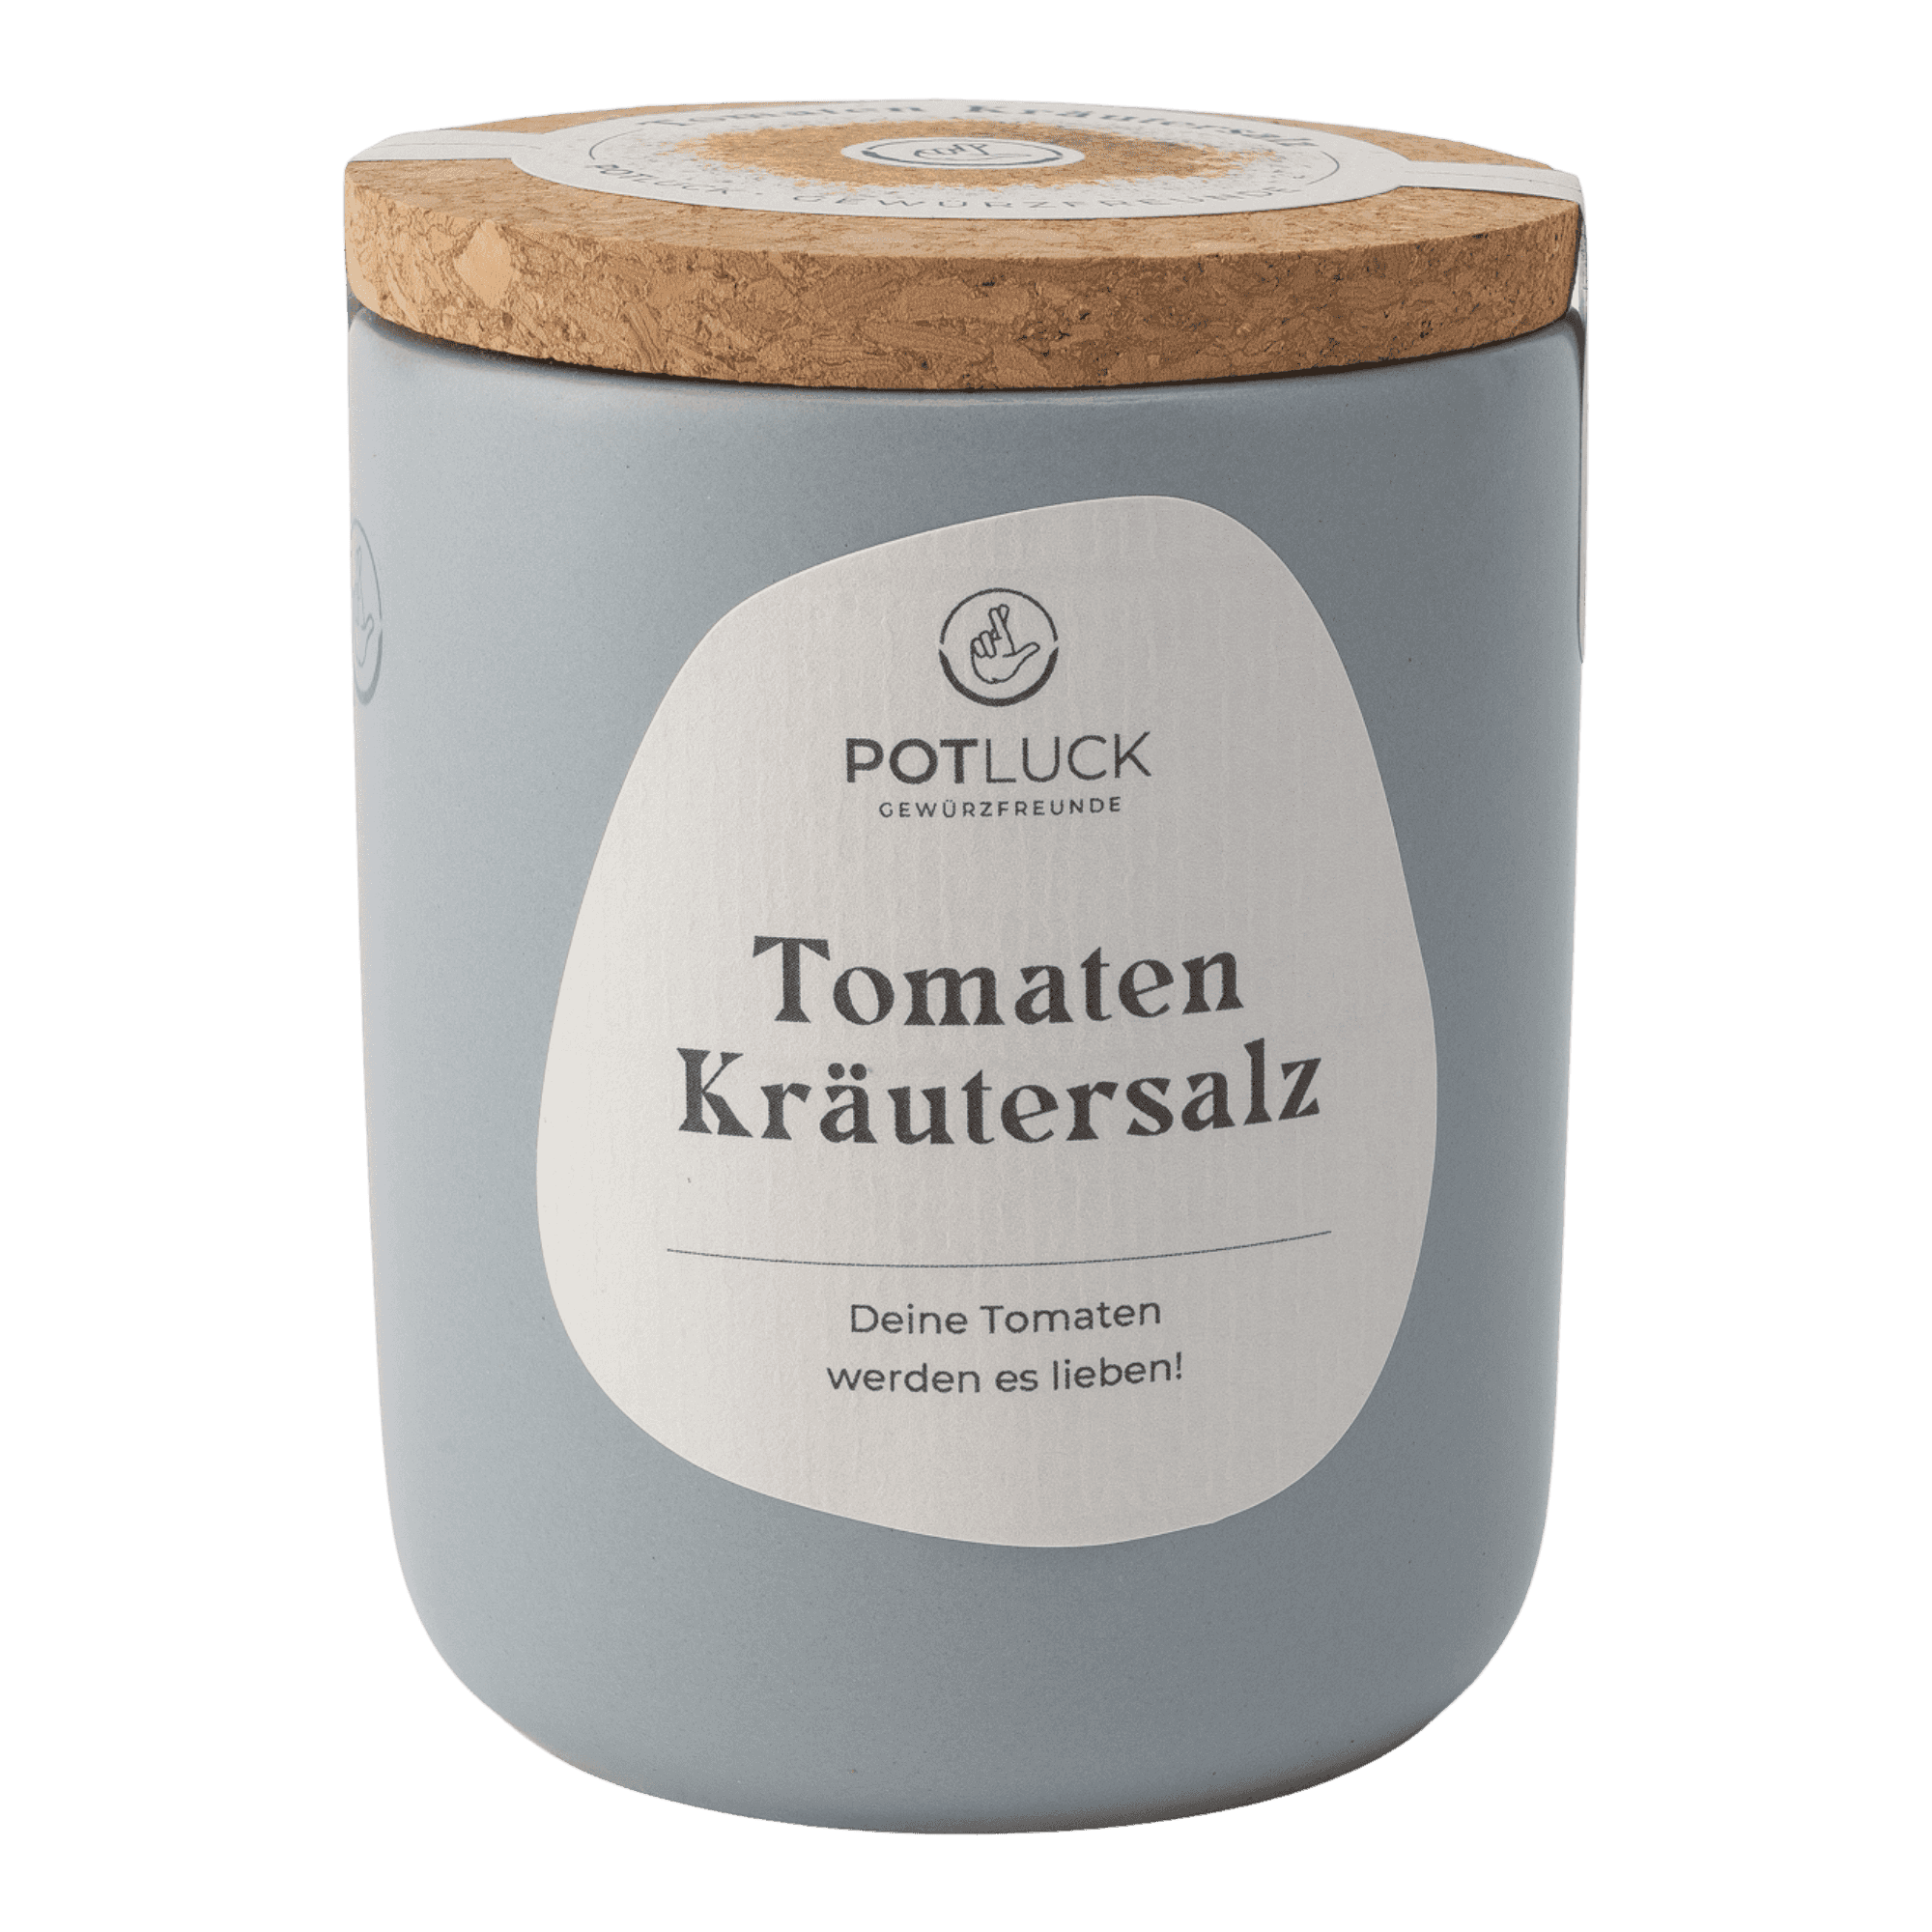 Tomaten Kräutersalz-Bild